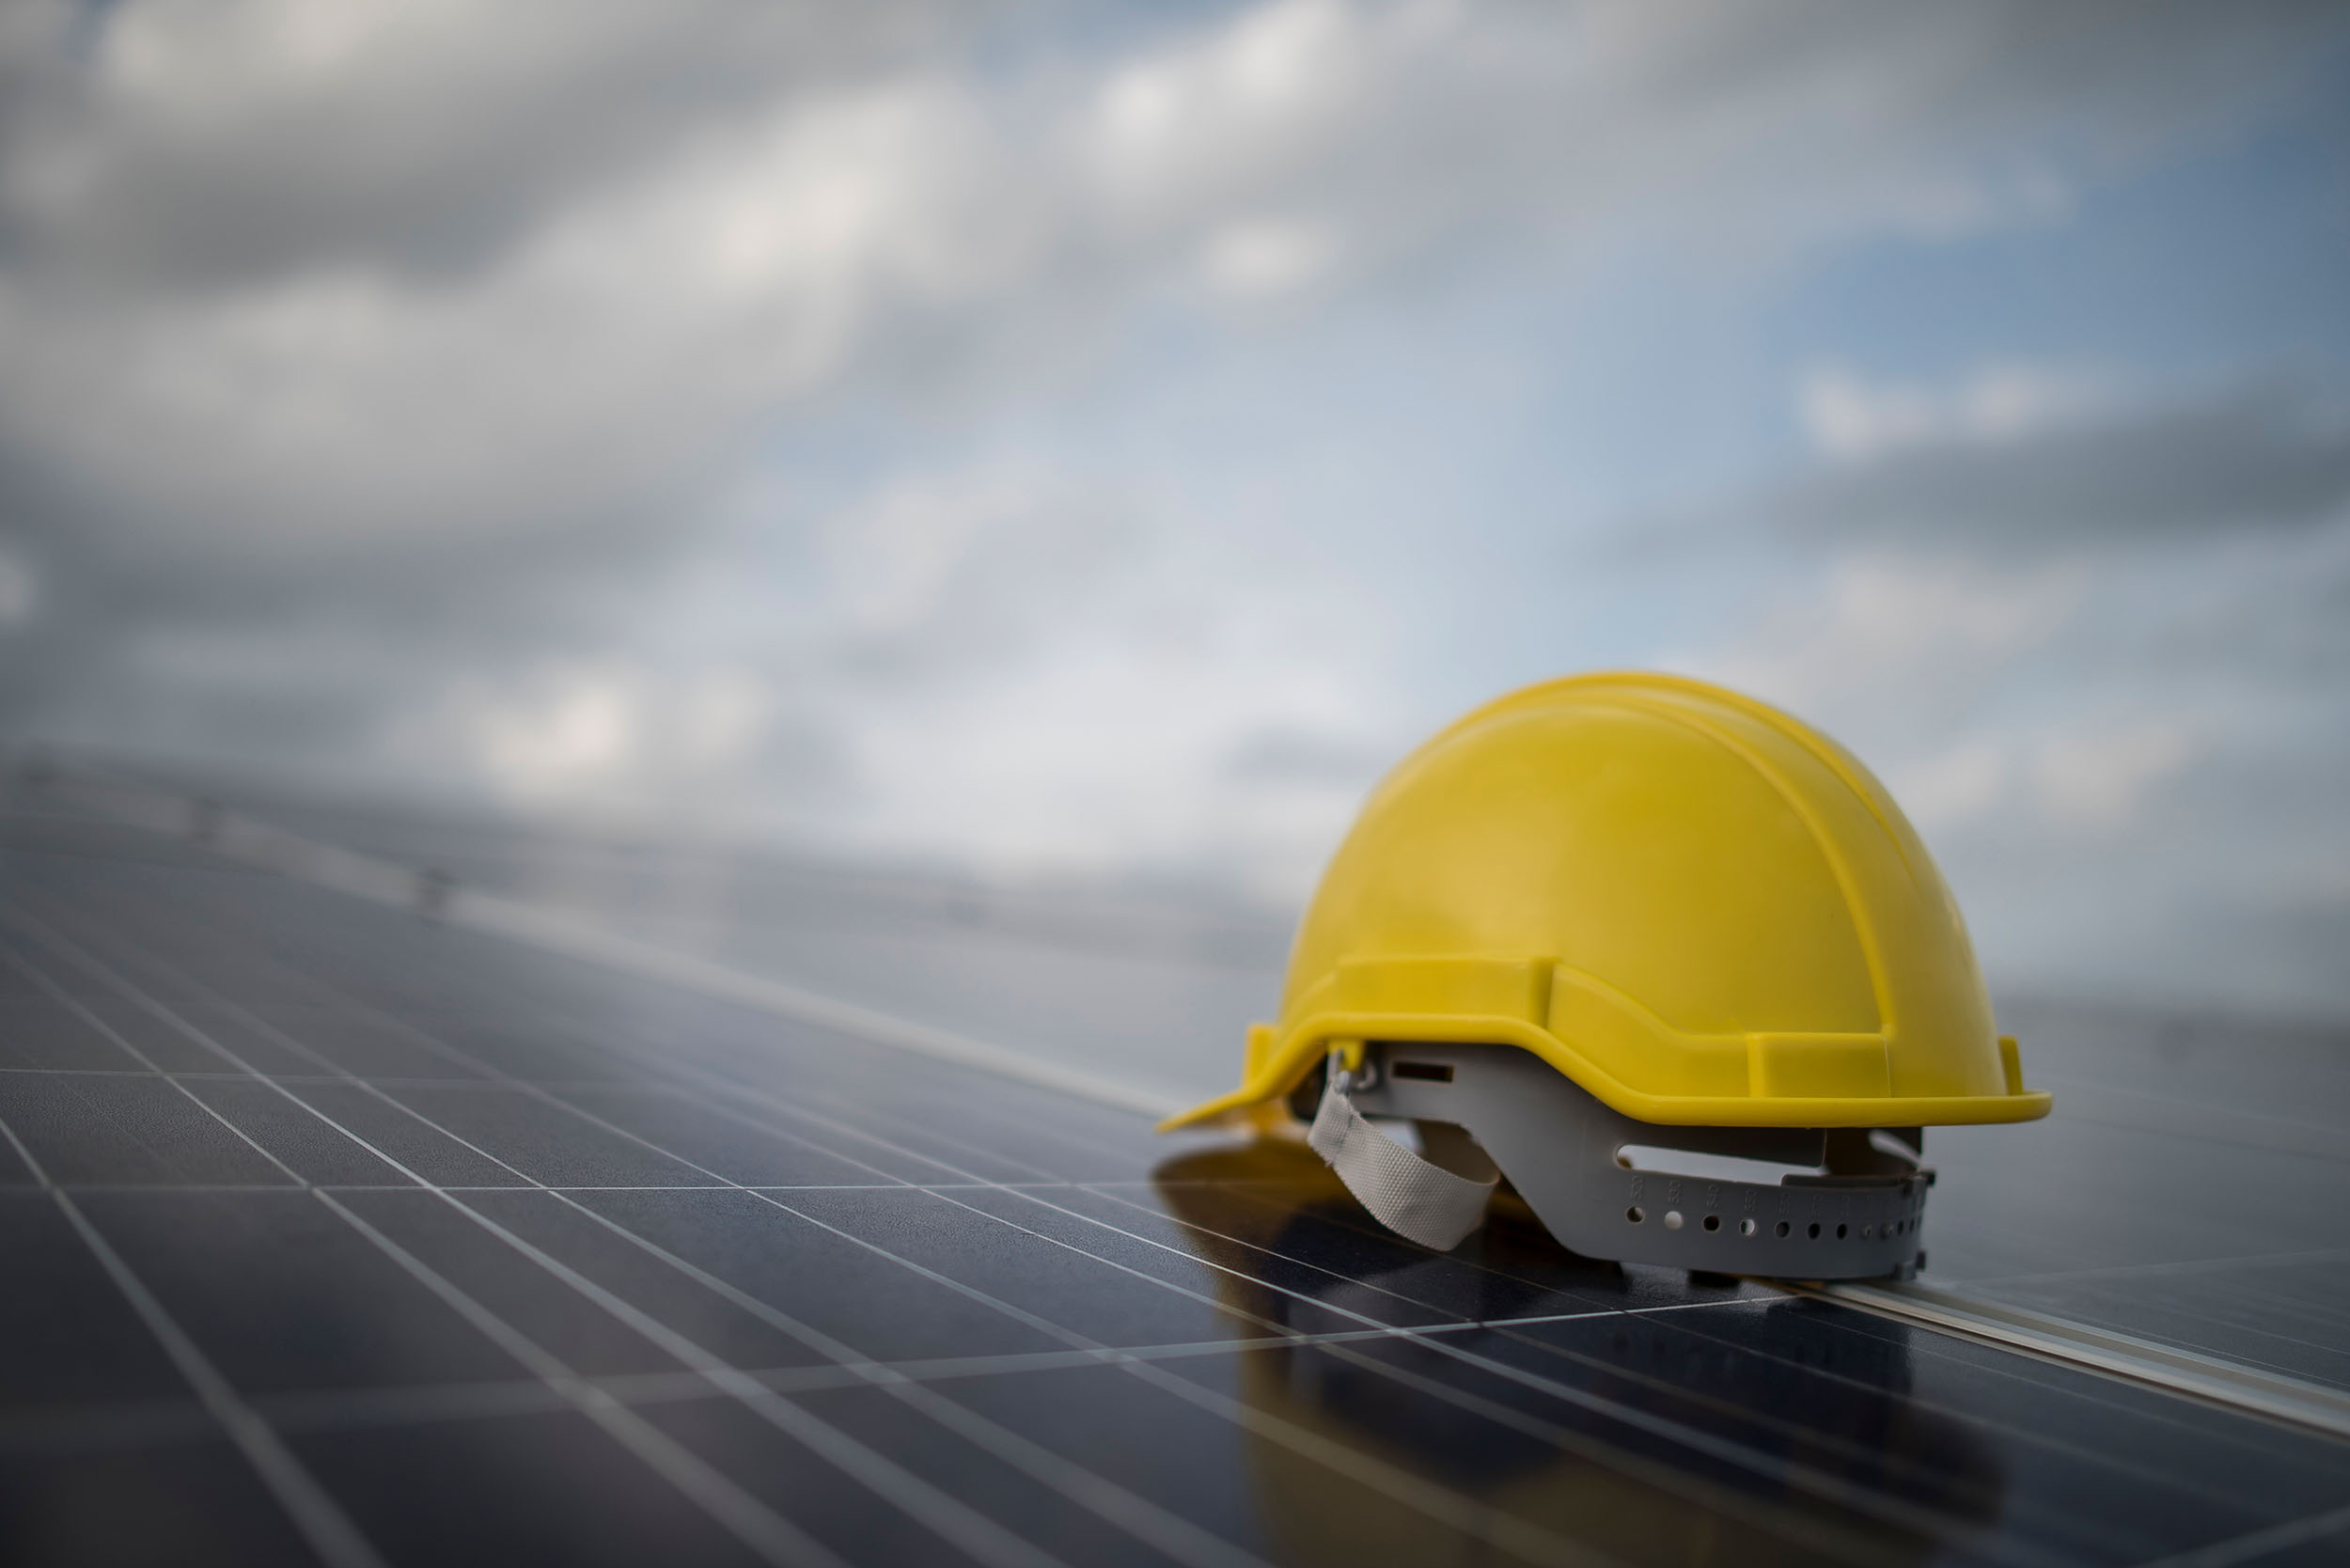 //www.energie-makler.at/wp-content/uploads/2018/02/yellow-safety-helmet-on-solar-cell-panel-HPSX45K.jpg